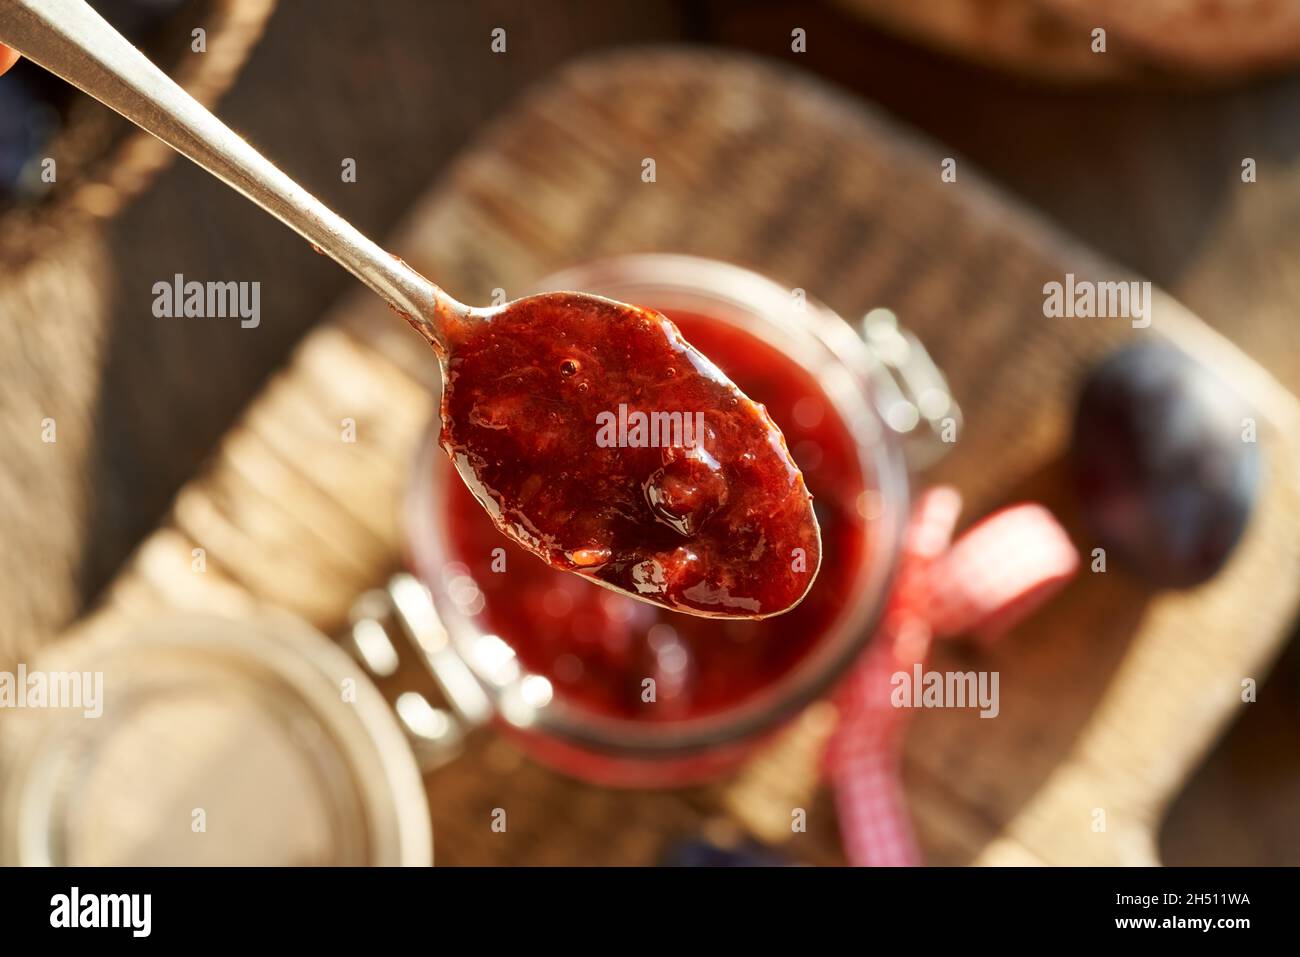 Un cucchiaio di klevela - conserve fatte in casa simili alla marmellata di prugne, vista dall'alto Foto Stock